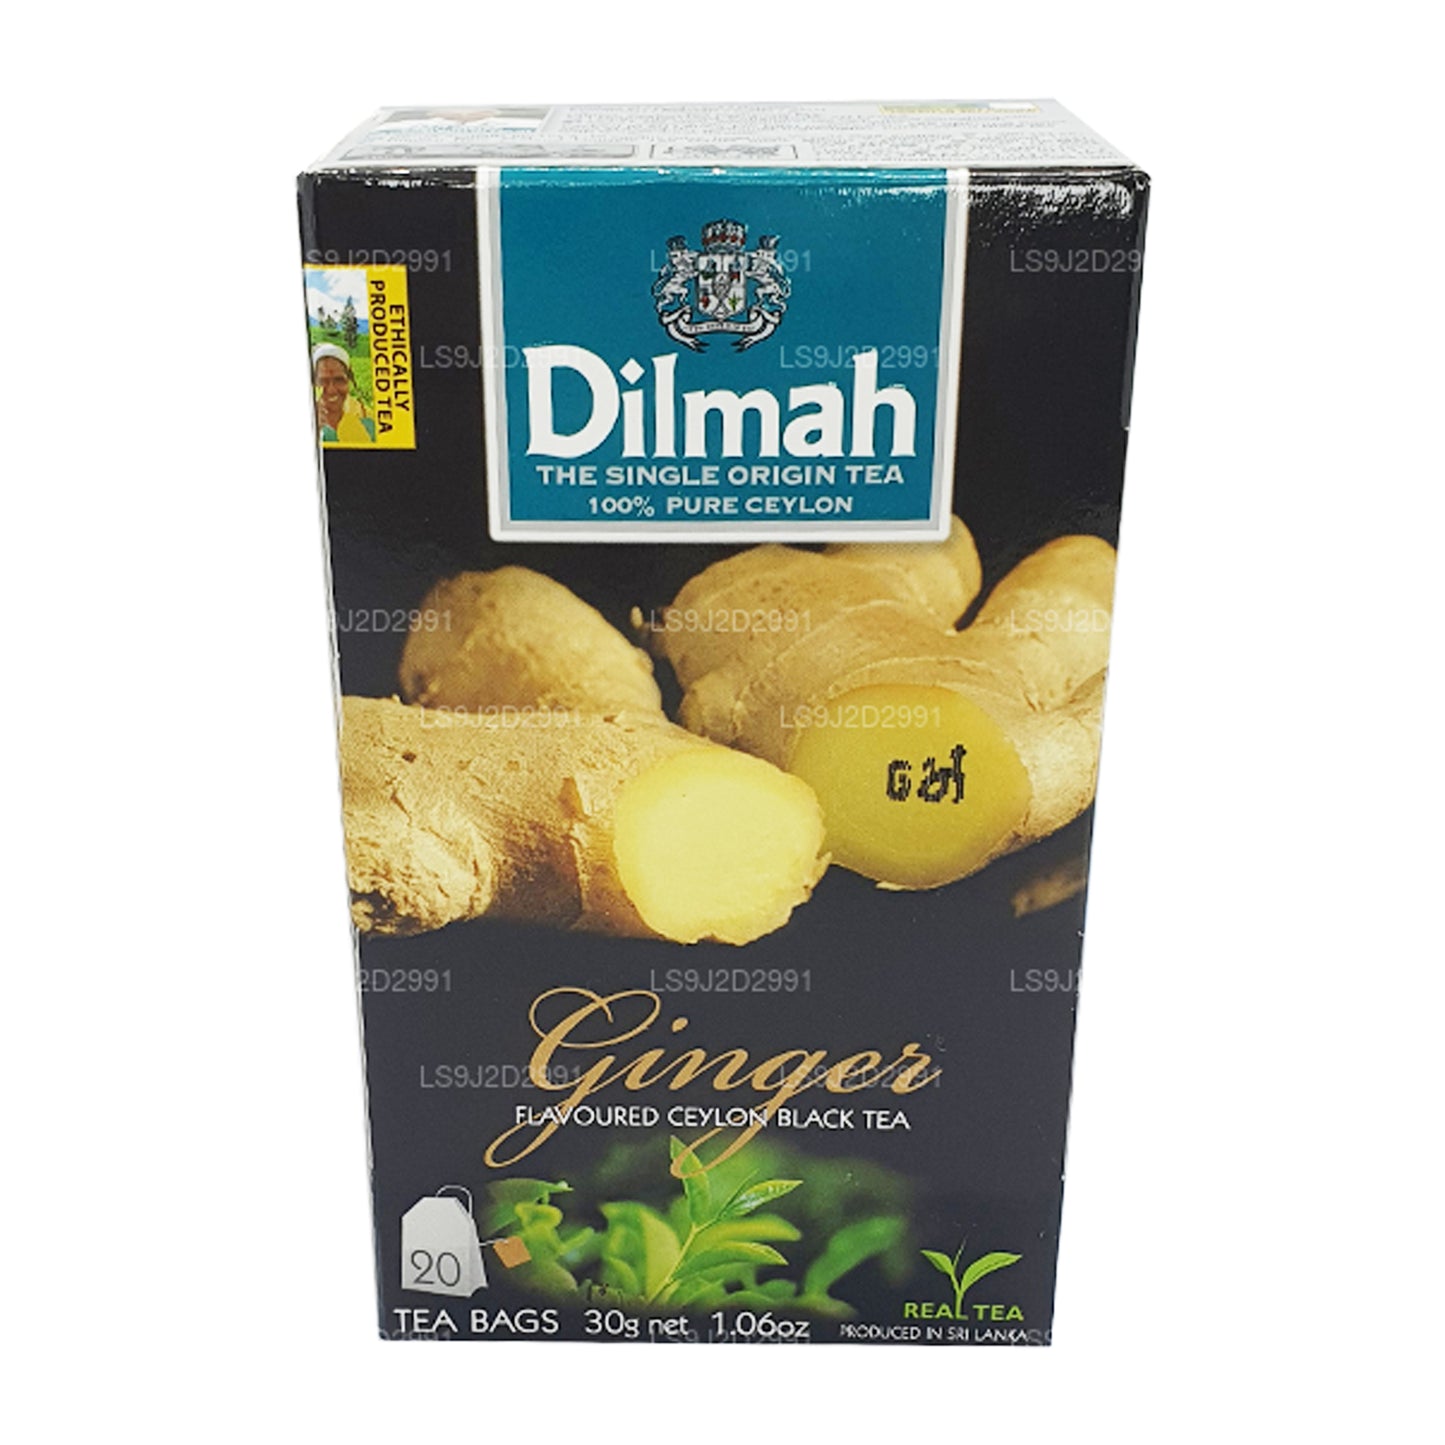 Черный чай Dilmah со вкусом имбиря (30 г) 20 пакетиков